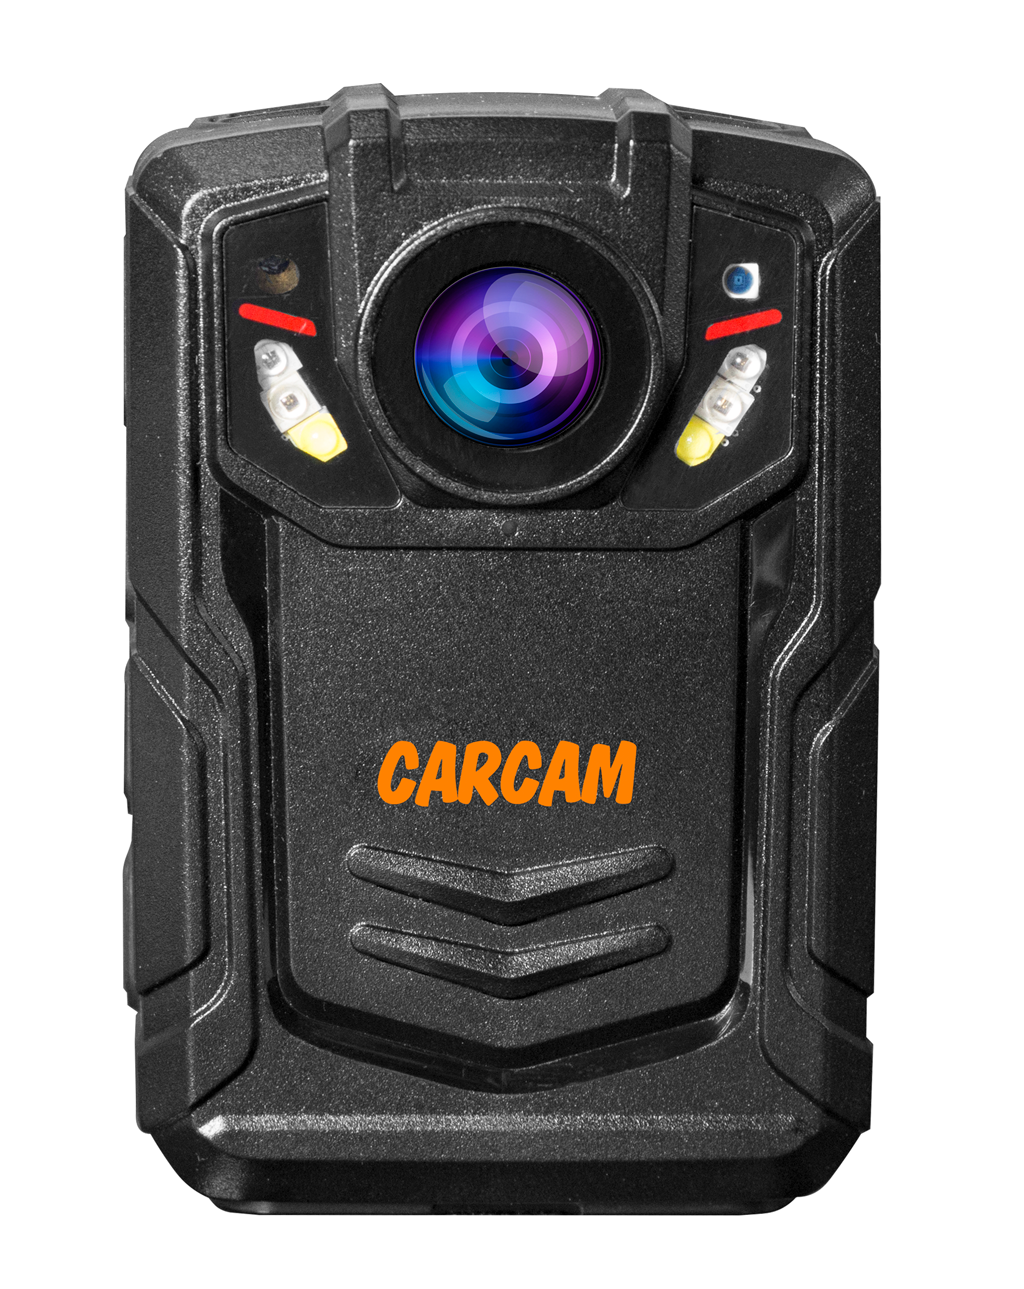 Персональный видеорегистратор CARCAM COMBAT 2S PRO 128GB персональный quad hd видеорегистратор для работников технических объектов carcam combat 2s prof 256gb